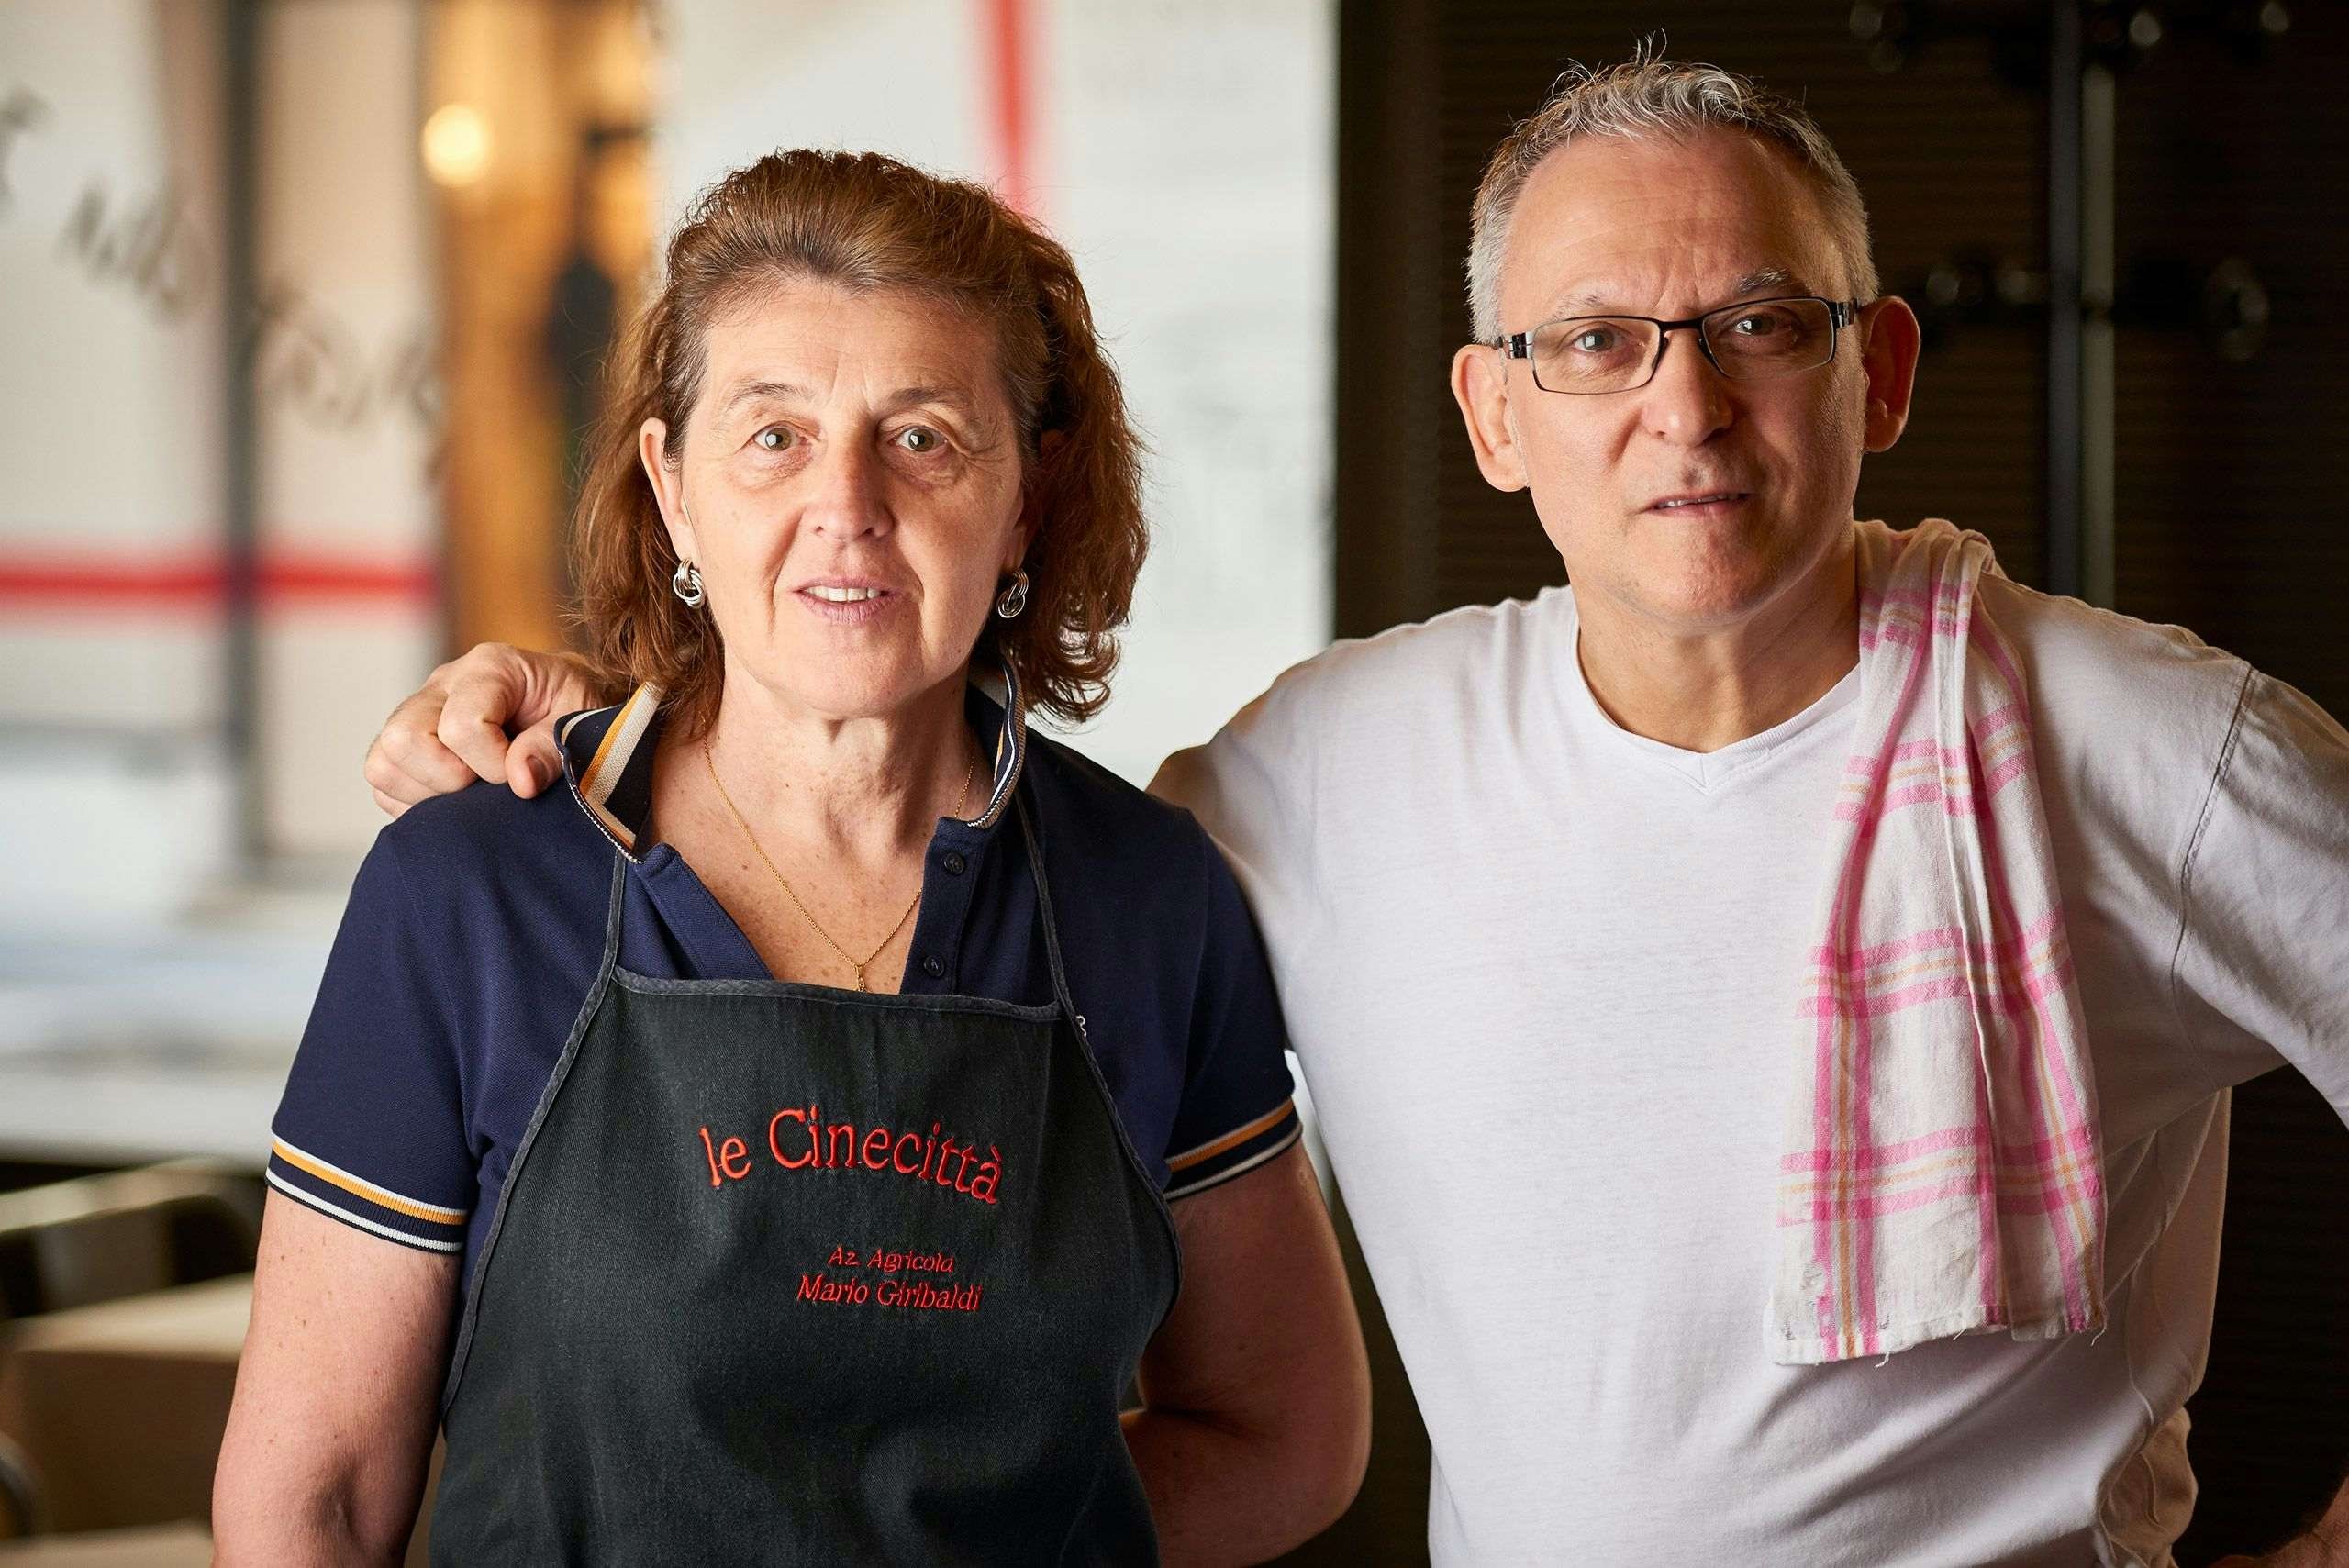 Pasquale & Pieralba Ricciardi, restaurant Le Cinecittà, Grenoble.